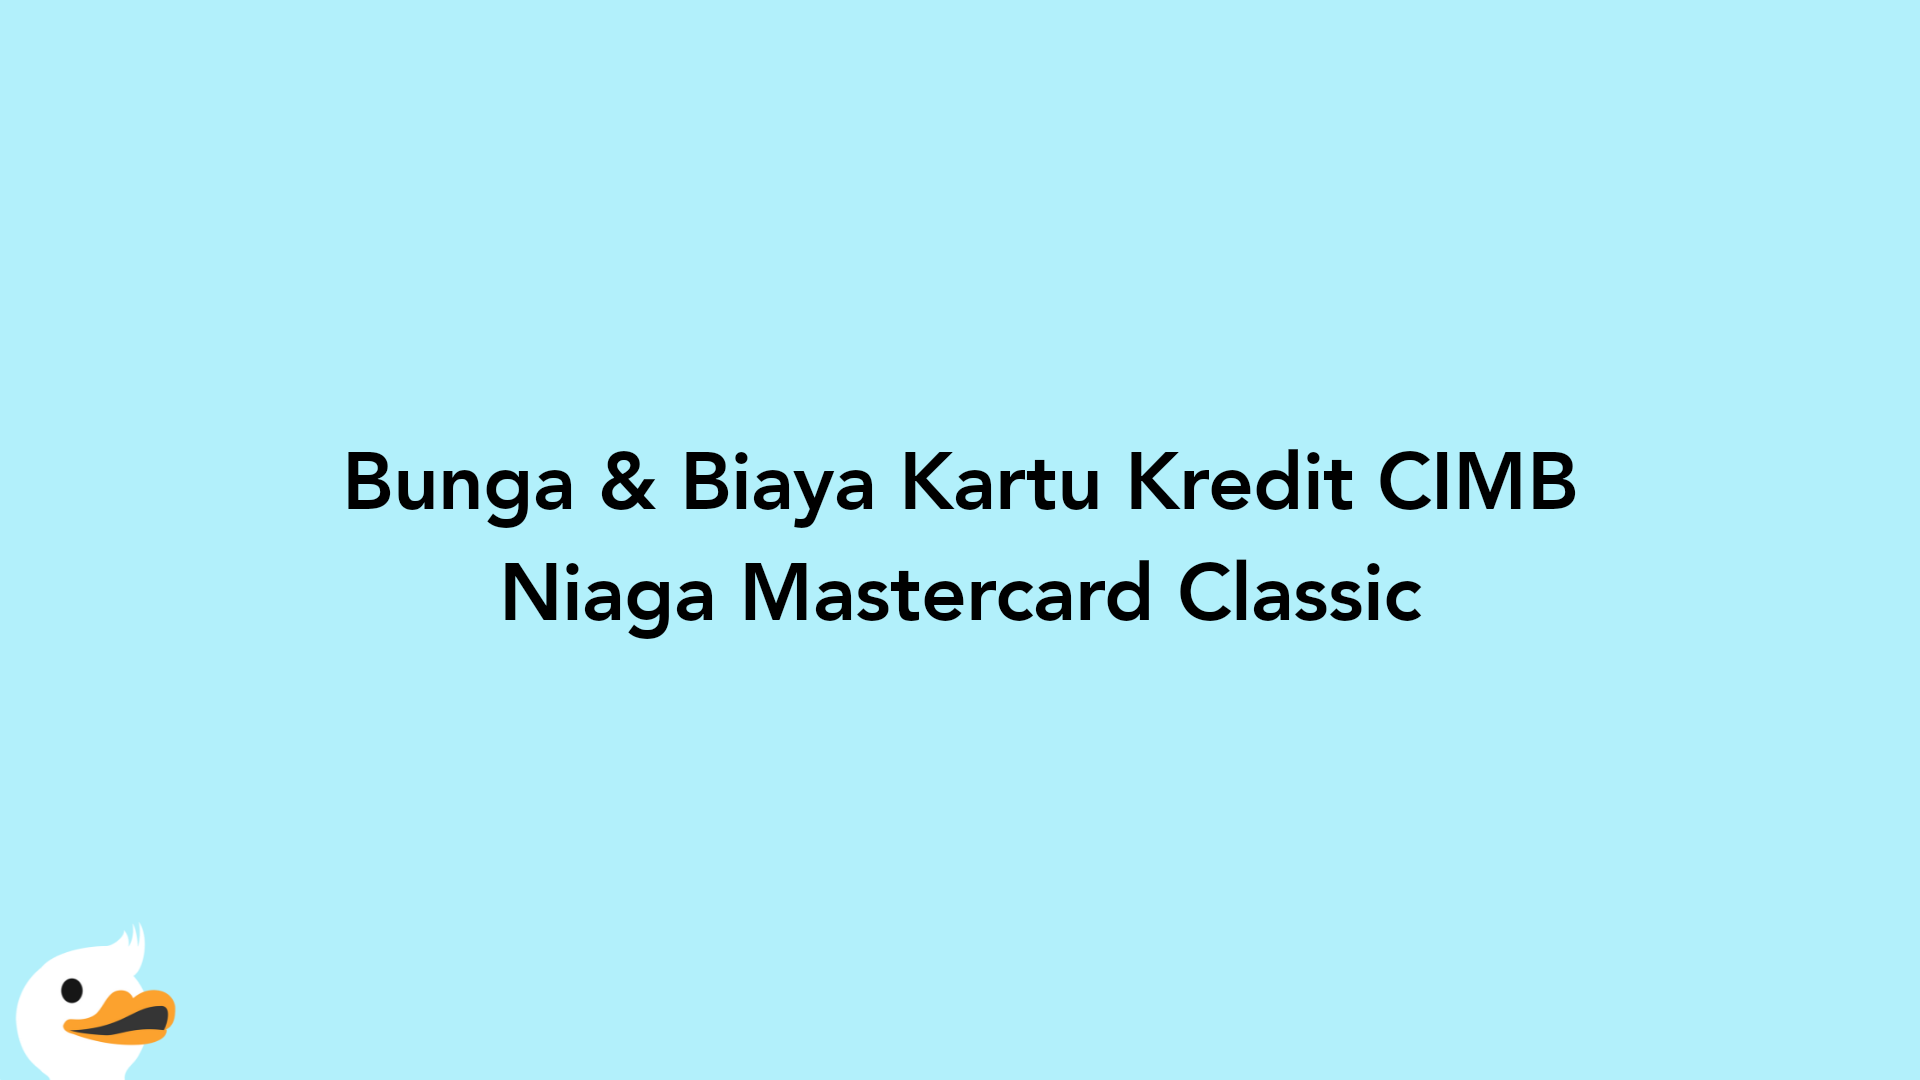 Bunga & Biaya Kartu Kredit CIMB Niaga Mastercard Classic